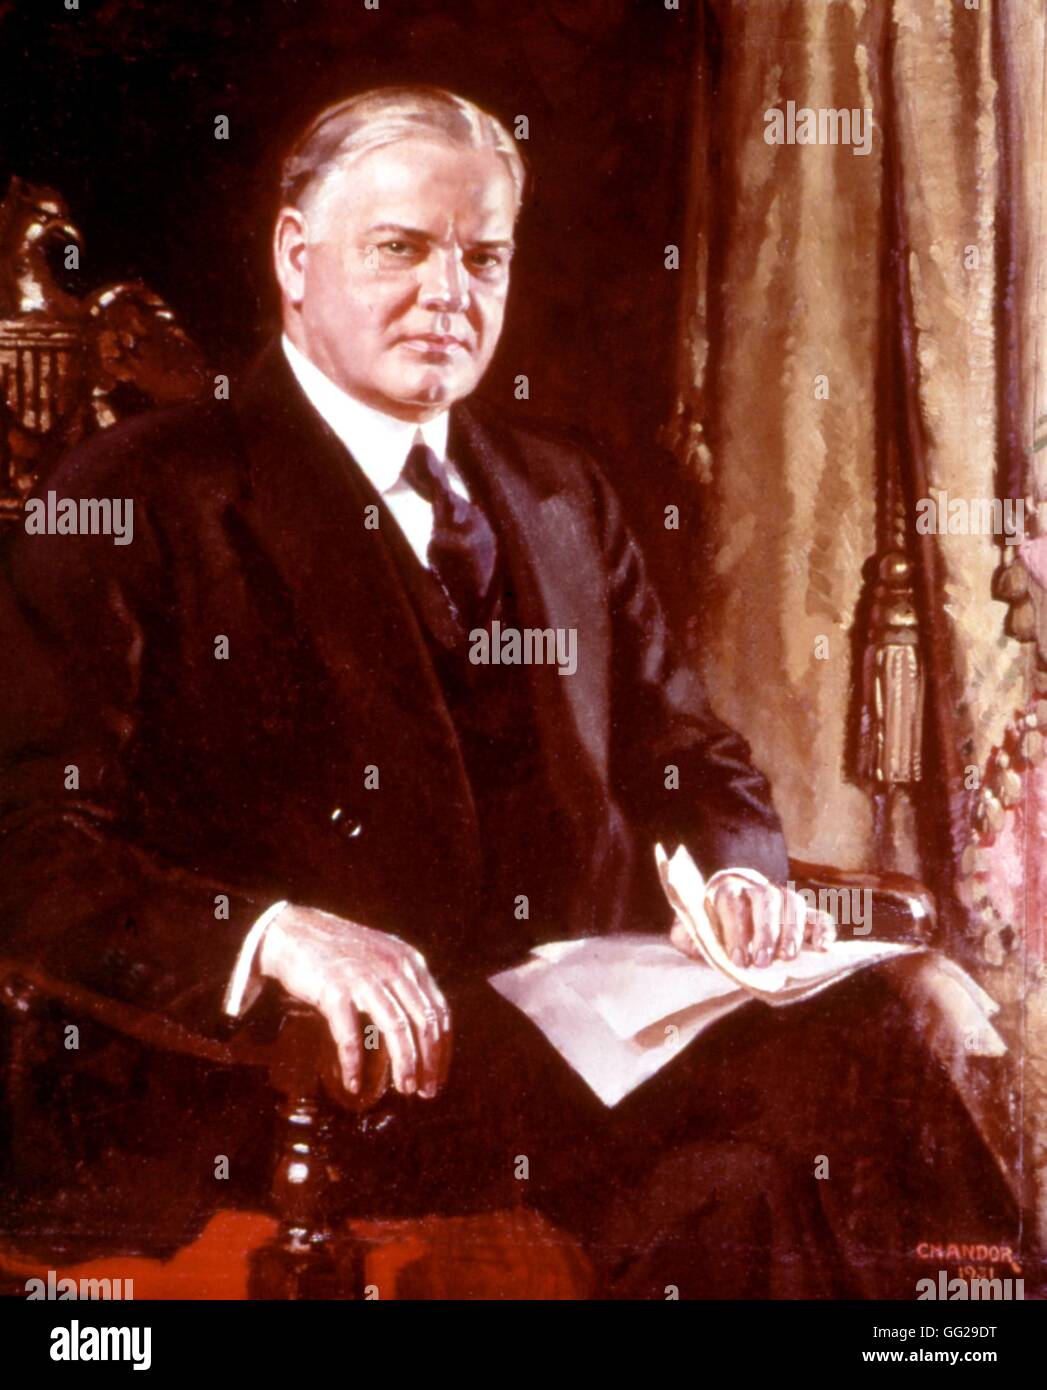 Douglas Chandor Englisch Schule Portrait von Herbert Hoover Öl auf Leinwand 1931 Washington, National Portrait Gallery Stockfoto